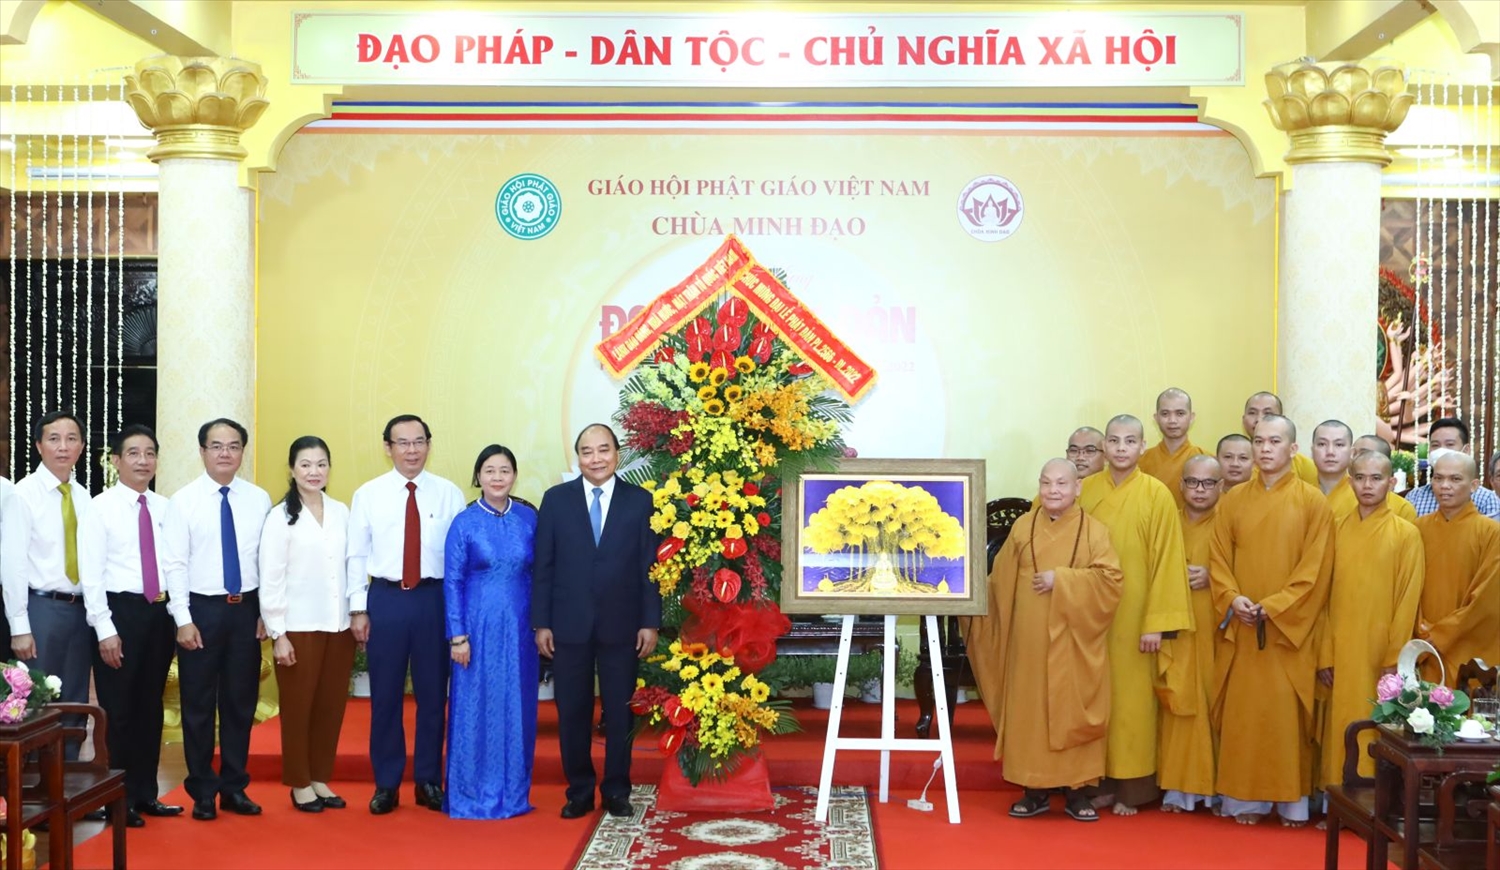 Chủ tịch nước Nguyễn Xuân Phúc thăm chùa Minh Đạo. Ảnh: VPCTN